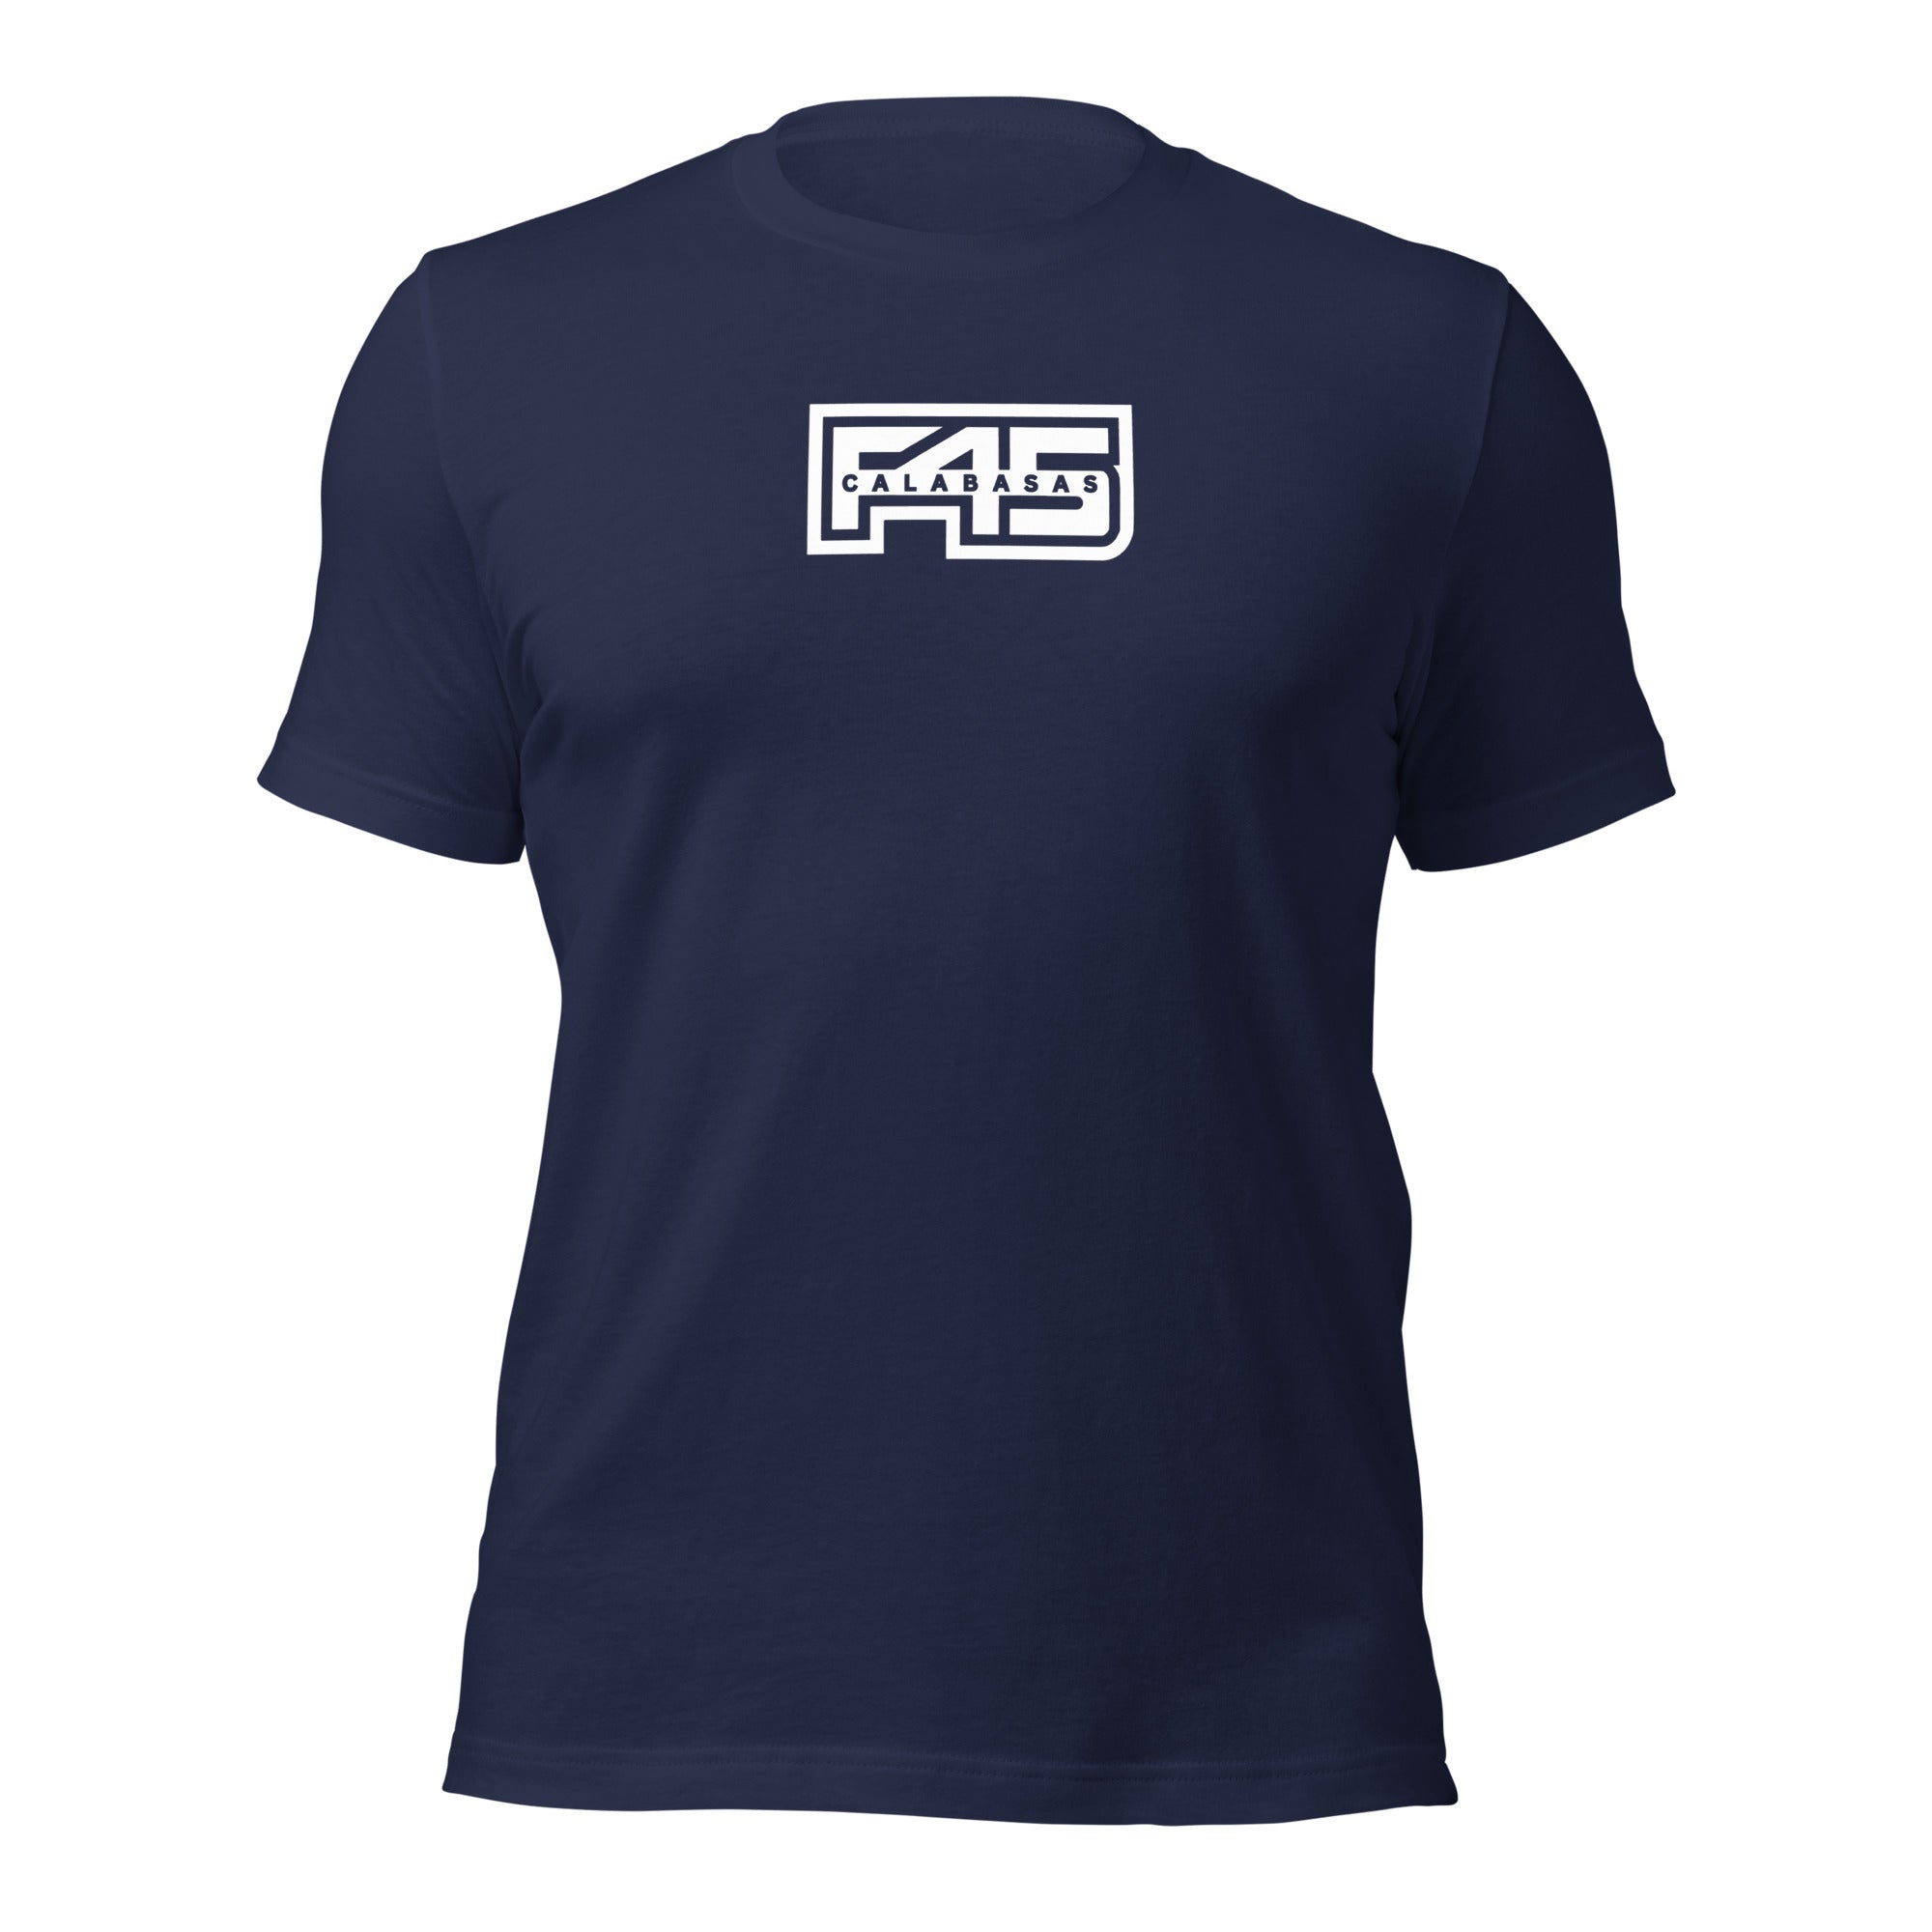 F45 Calabasas Shirt